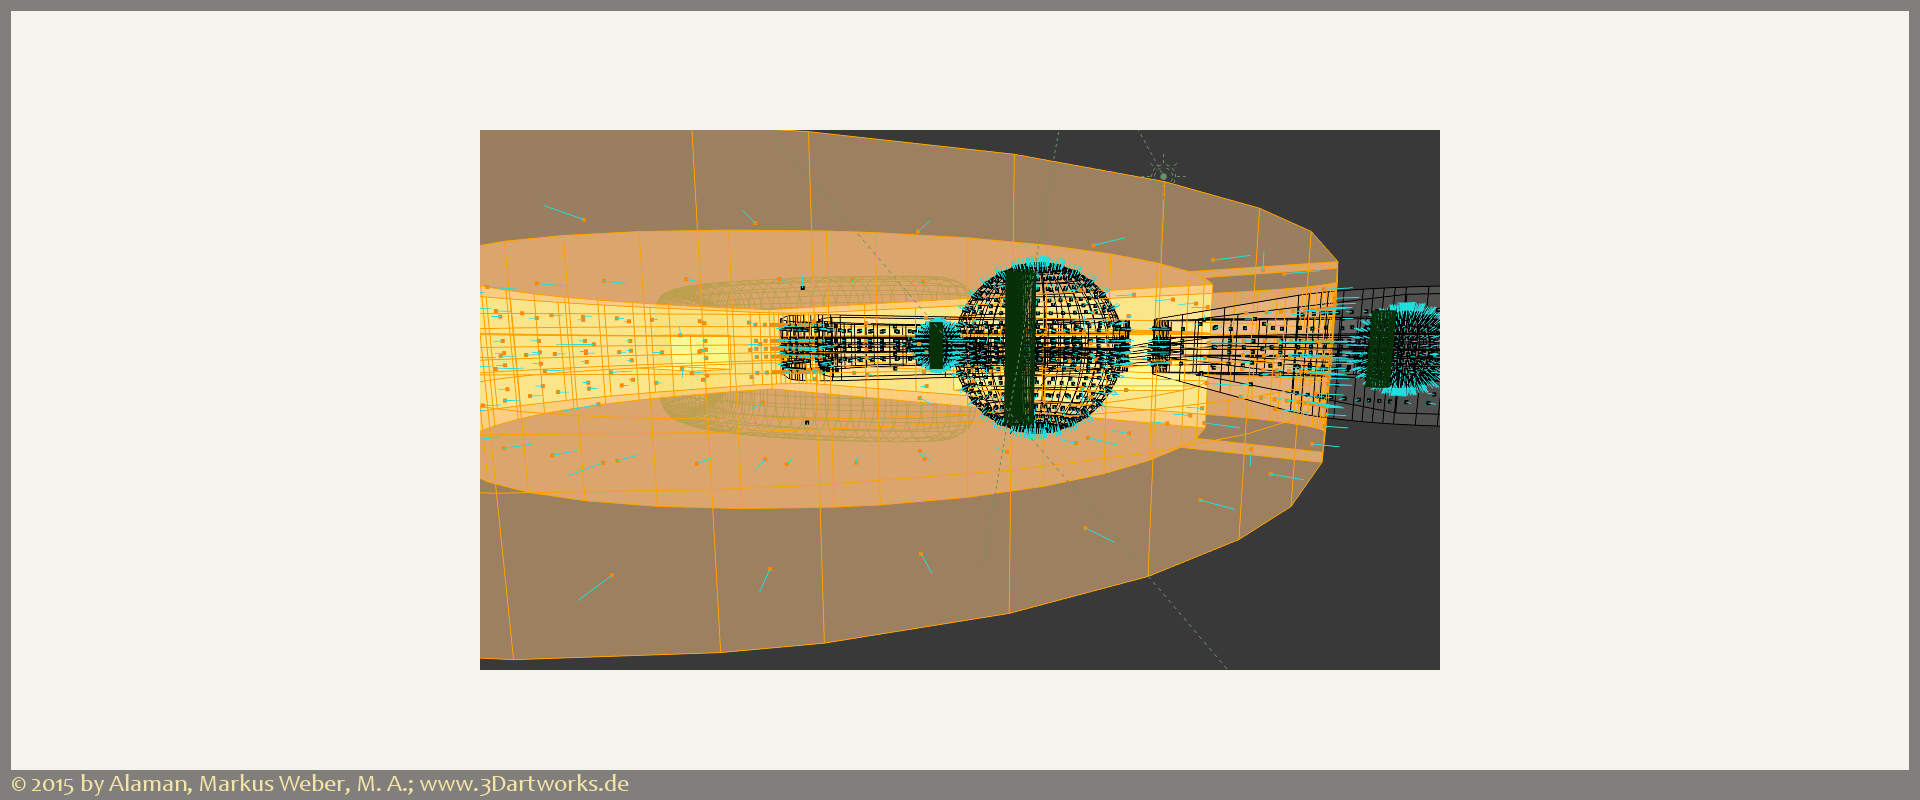 In Arbeit bei Alaman 3D Artworks: Produktvisualisierung, Arbeiten am Alaman 3D Artworks Raumschiff.